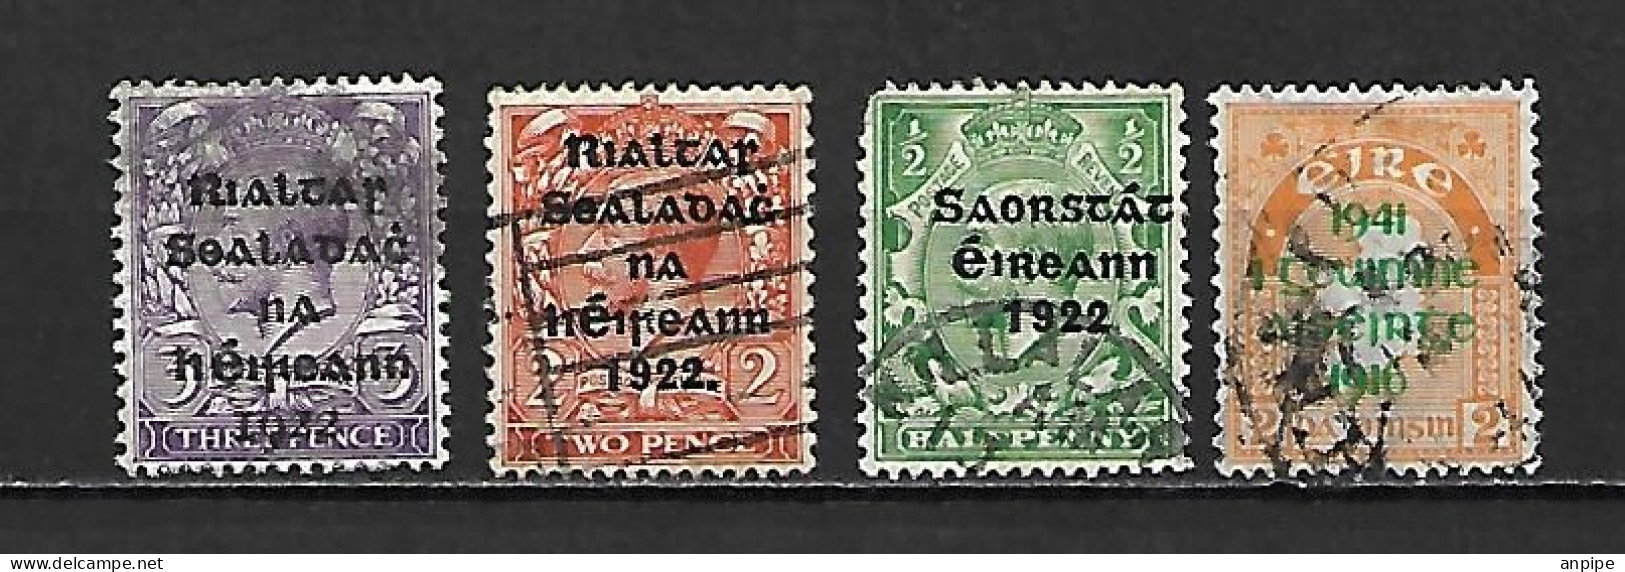 TUNEZ- IRLANDA - Unused Stamps